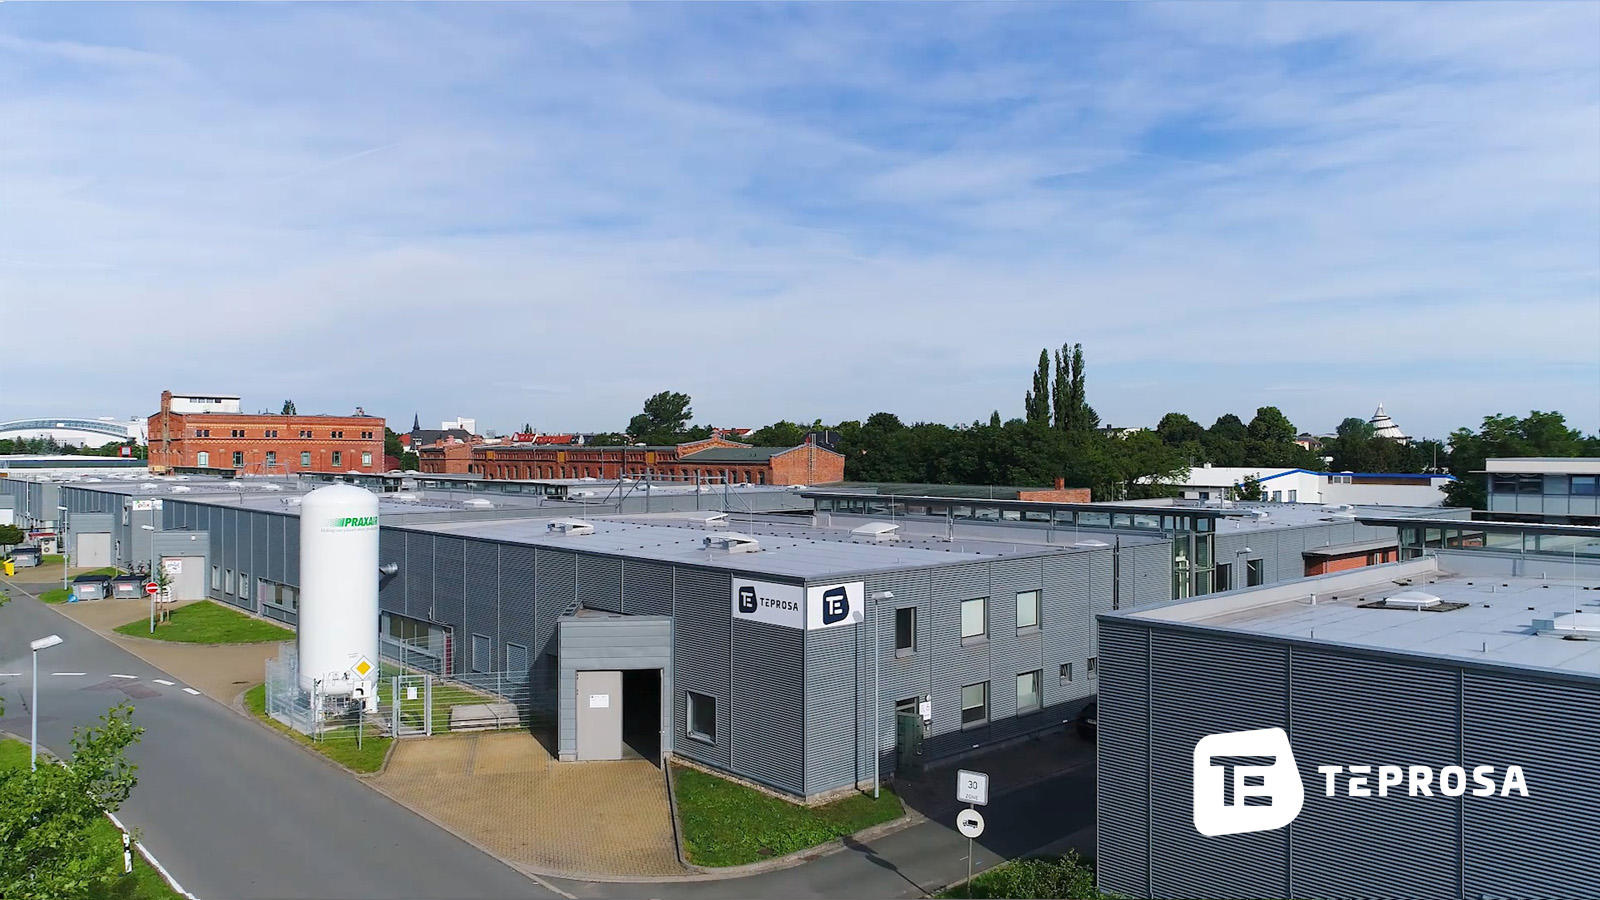 TEPROSA GmbH, Paul-Ecke-Strasse 6 in Magdeburg